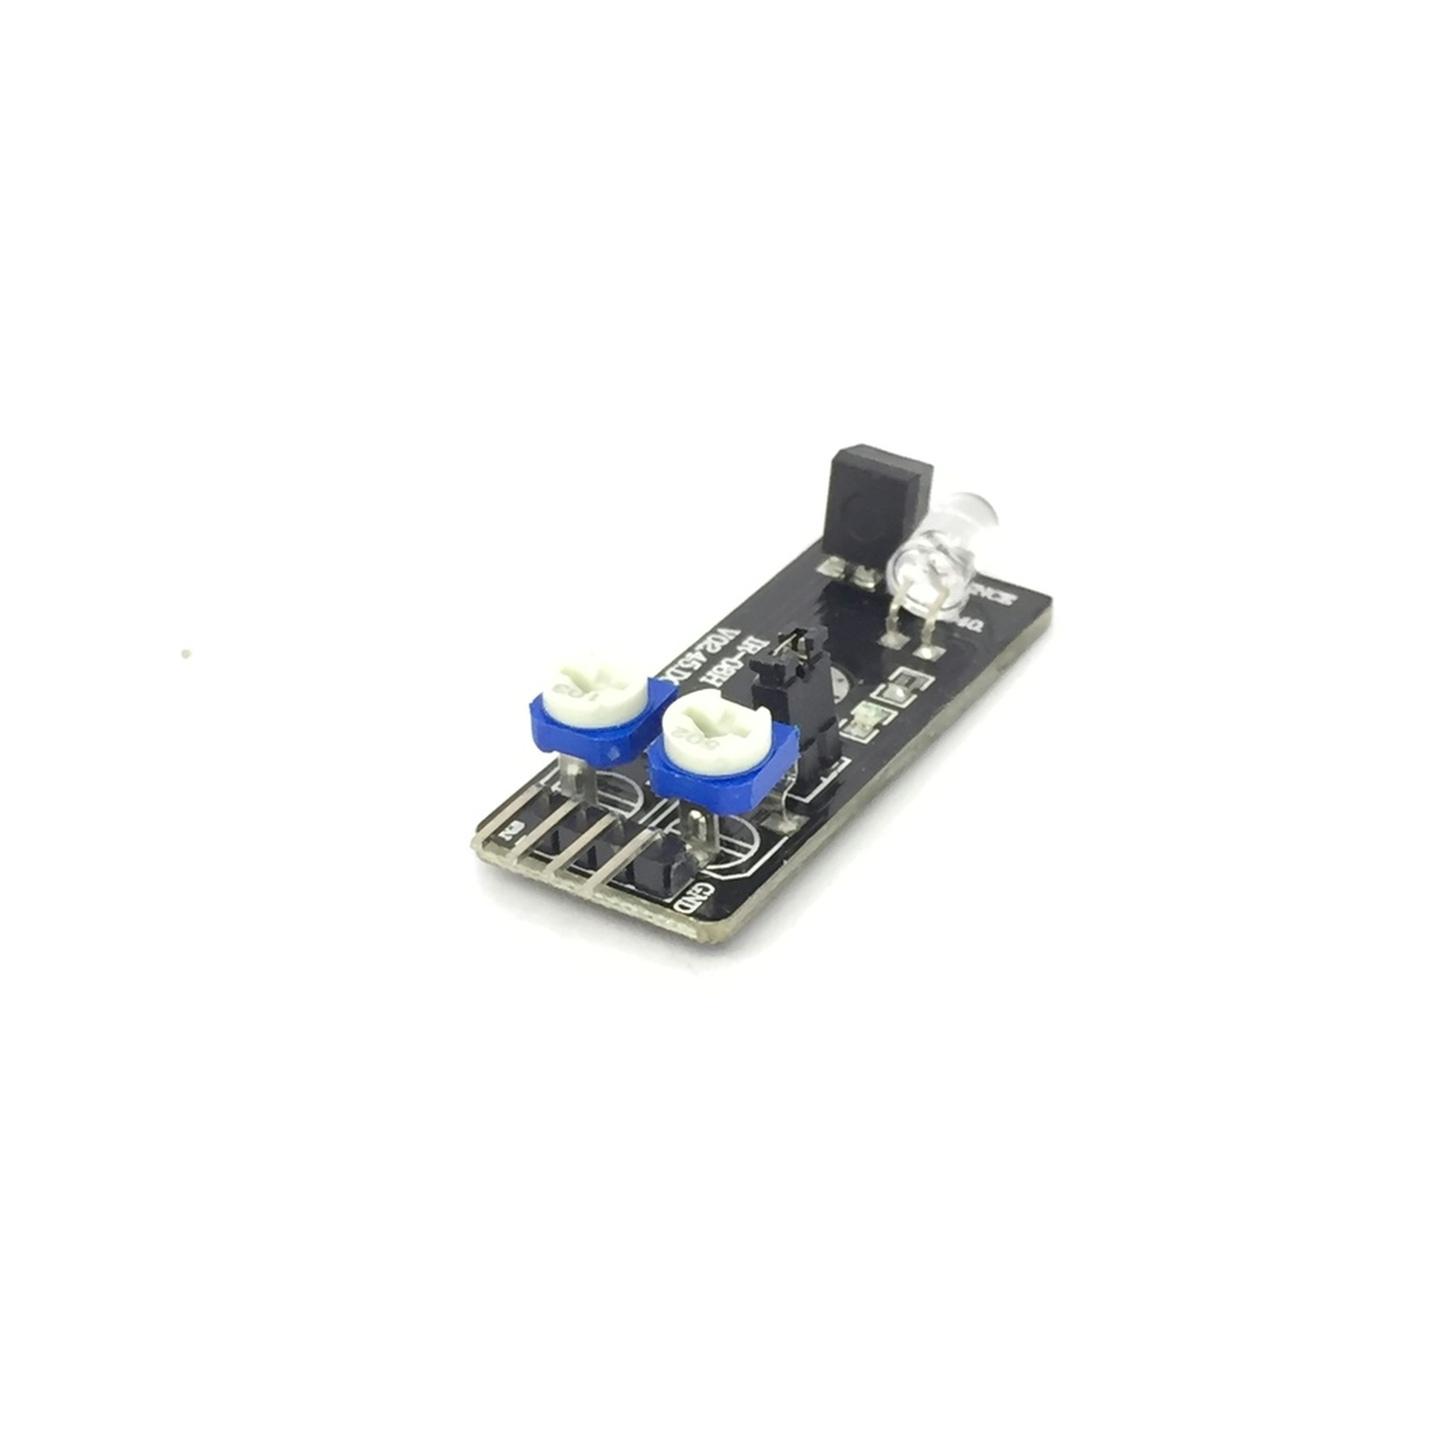 Duinotech Arduino Compatible IR Obstacle Avoidance Sensor Module